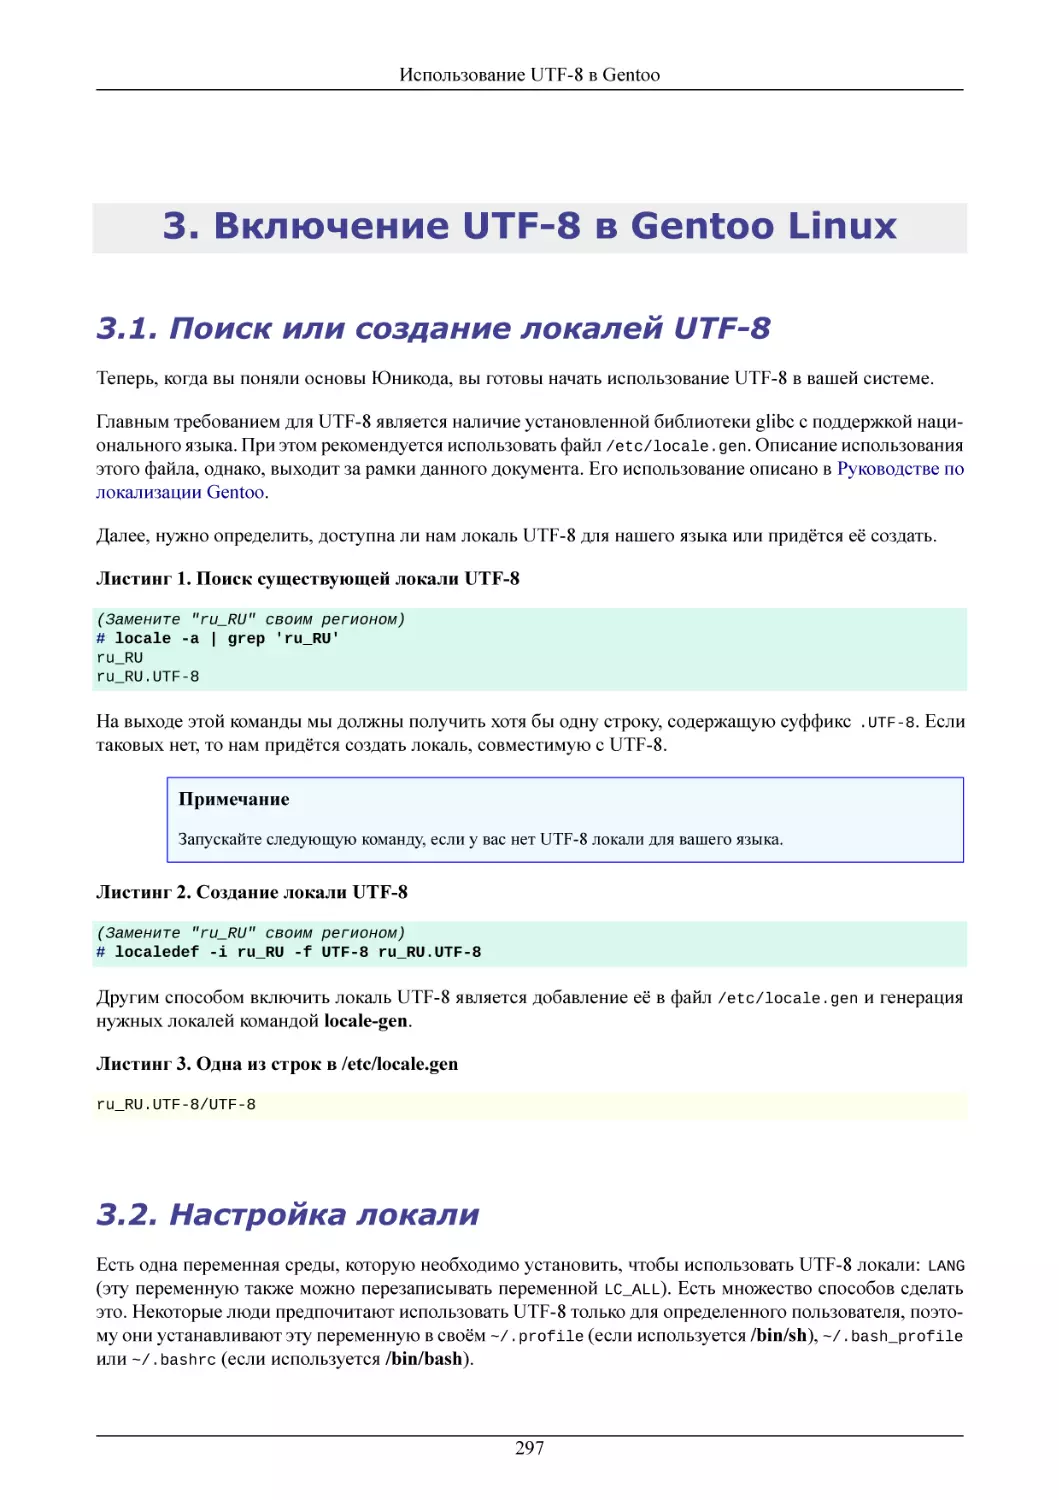 Включение UTF-8 в Gentoo Linux
Поиск или создание локалей UTF-8
Настройка локали